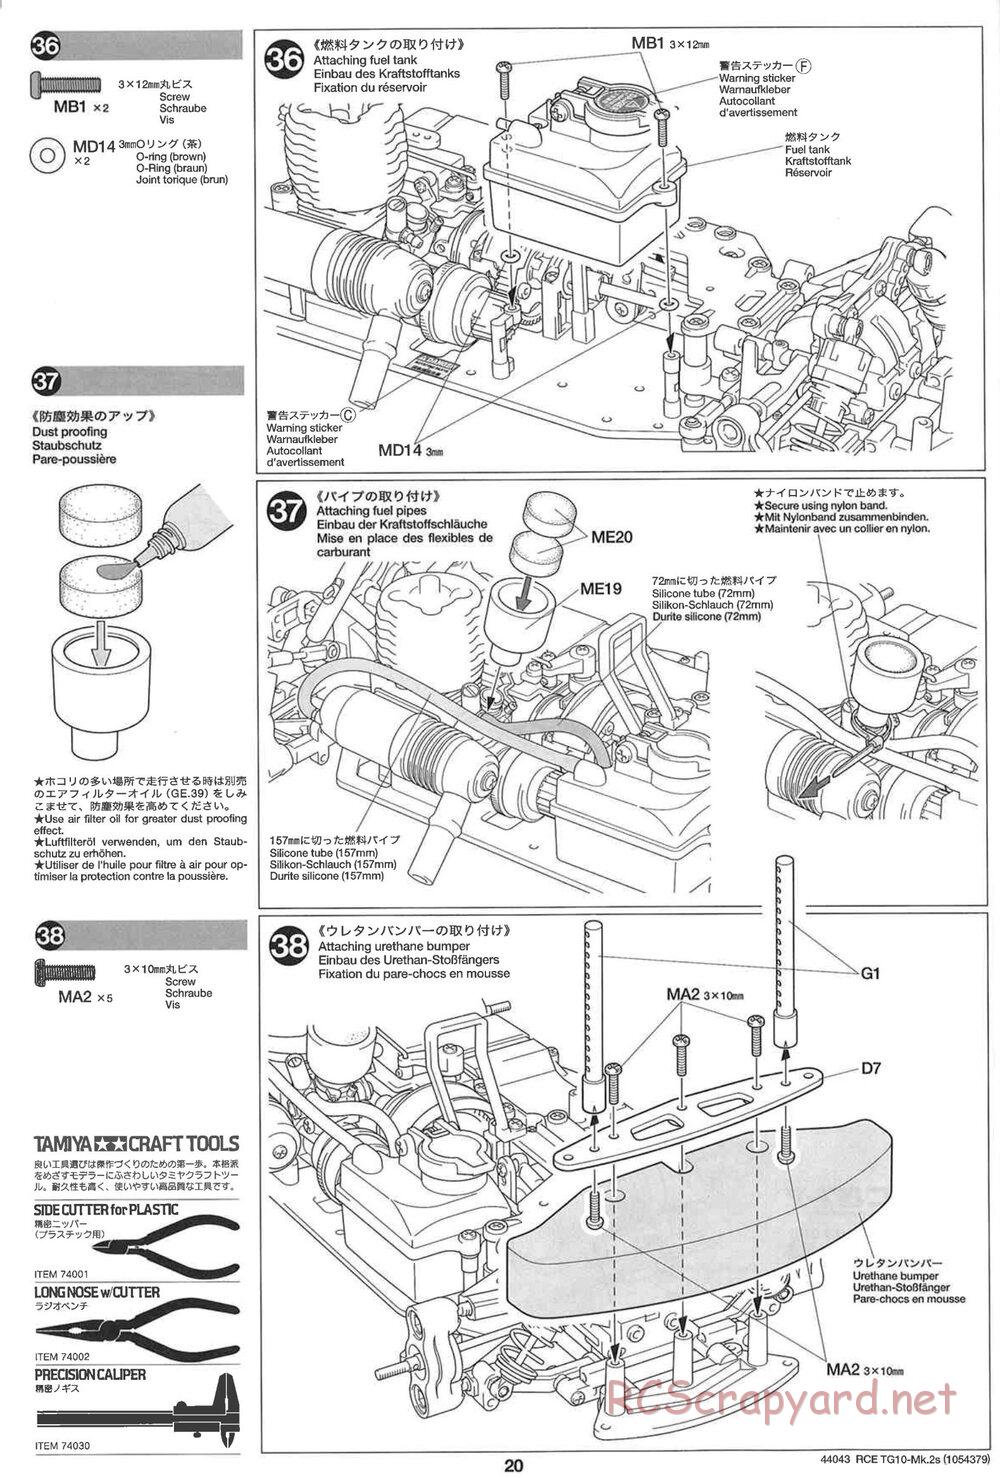 Tamiya - TG10 Mk.2s Chassis - Manual - Page 21